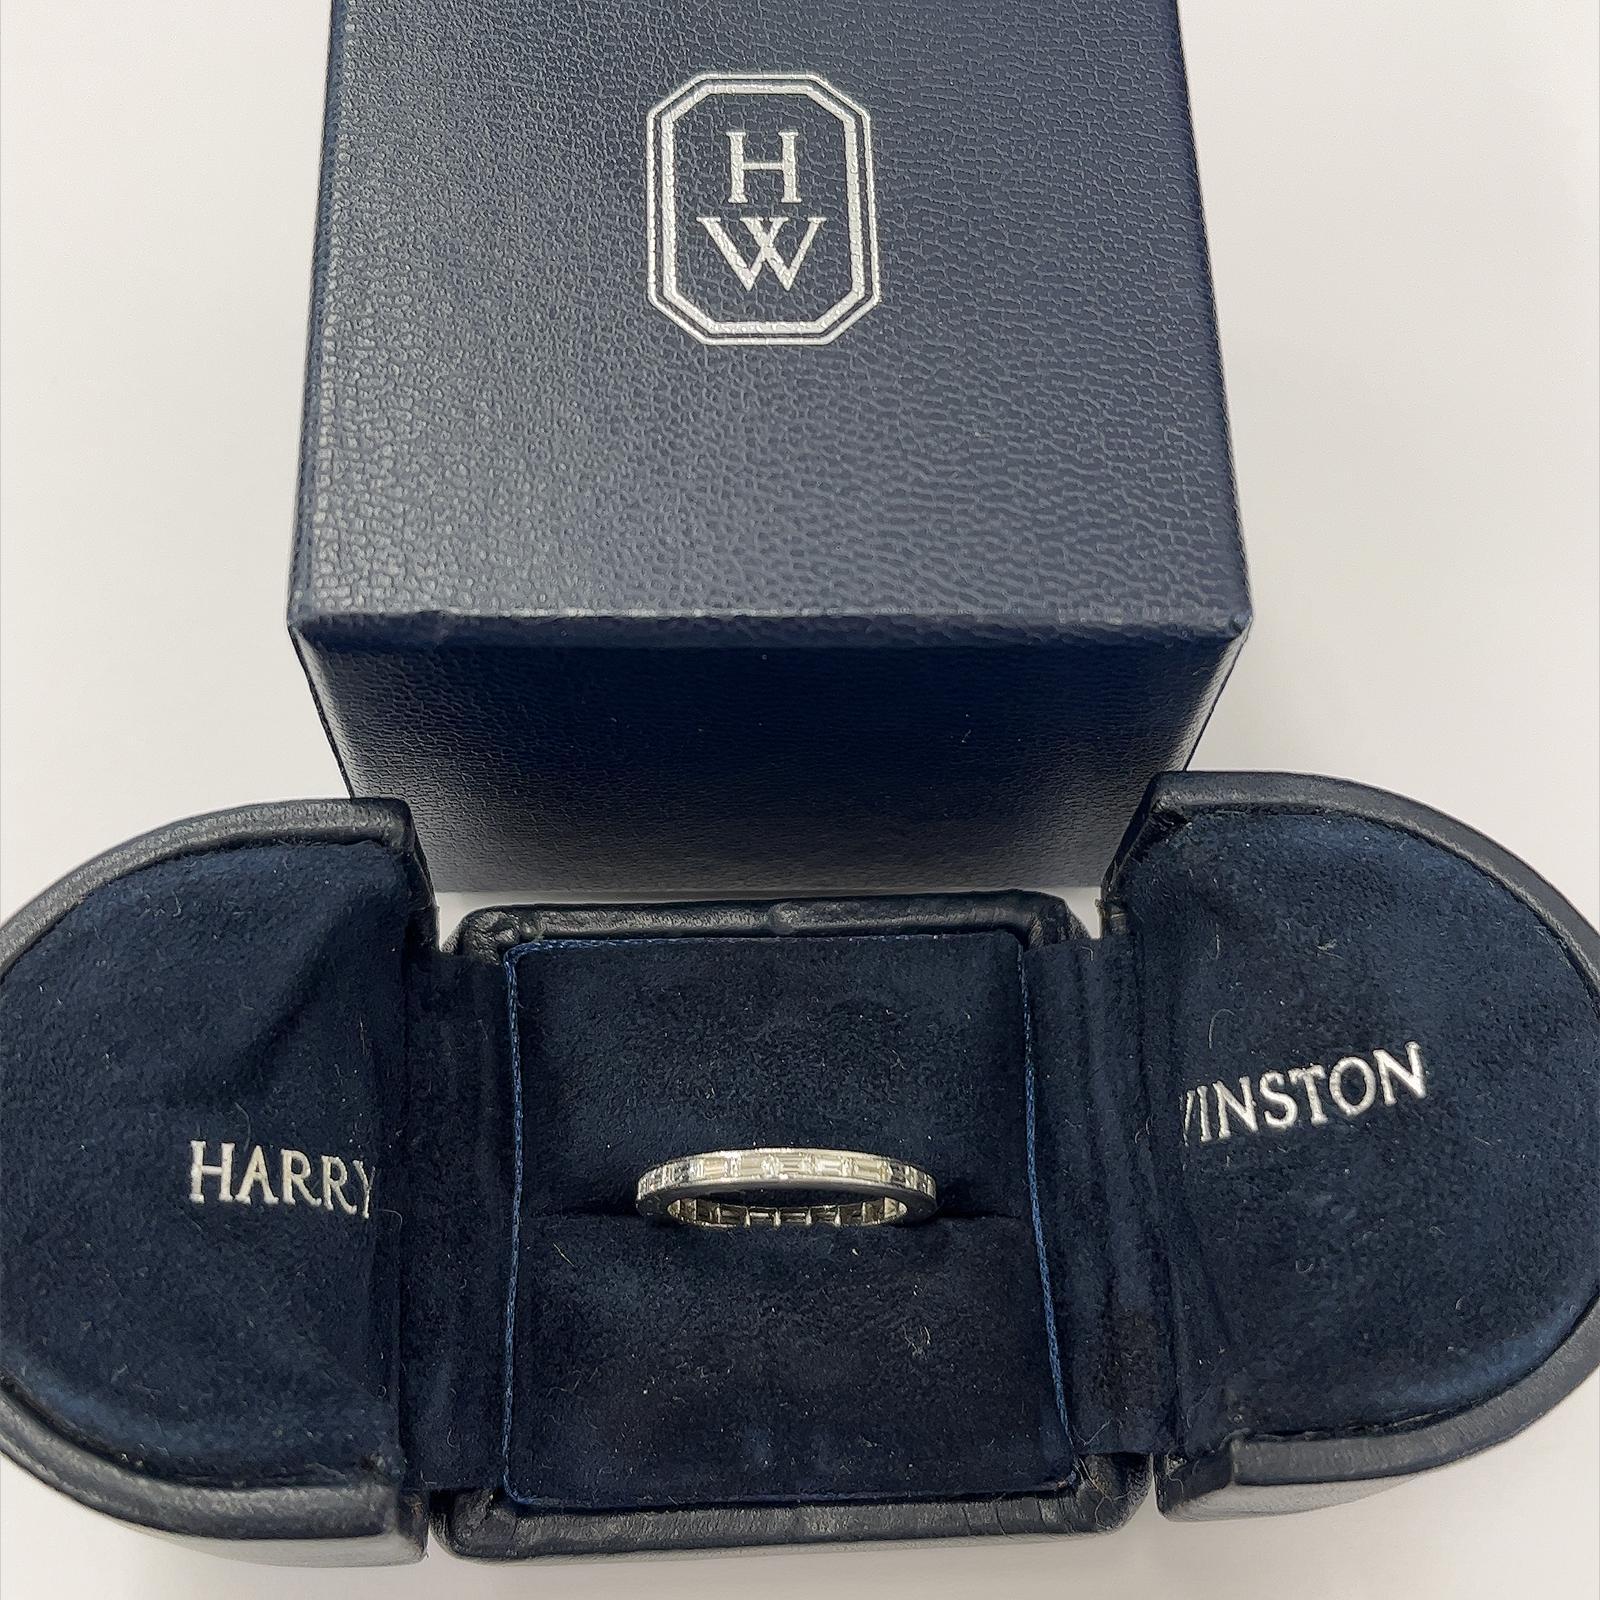 Ein Harry Winston Diamant-Hochzeitsband 
mit Baguette-Diamanten besetzt ist eine atemberaubende Wahl 
als Symbol für ewige Liebe und Verpflichtung. 
Baguette-Diamanten verleihen dem Ehering eine einzigartige und elegante Note. 
Baguette-Diamanten